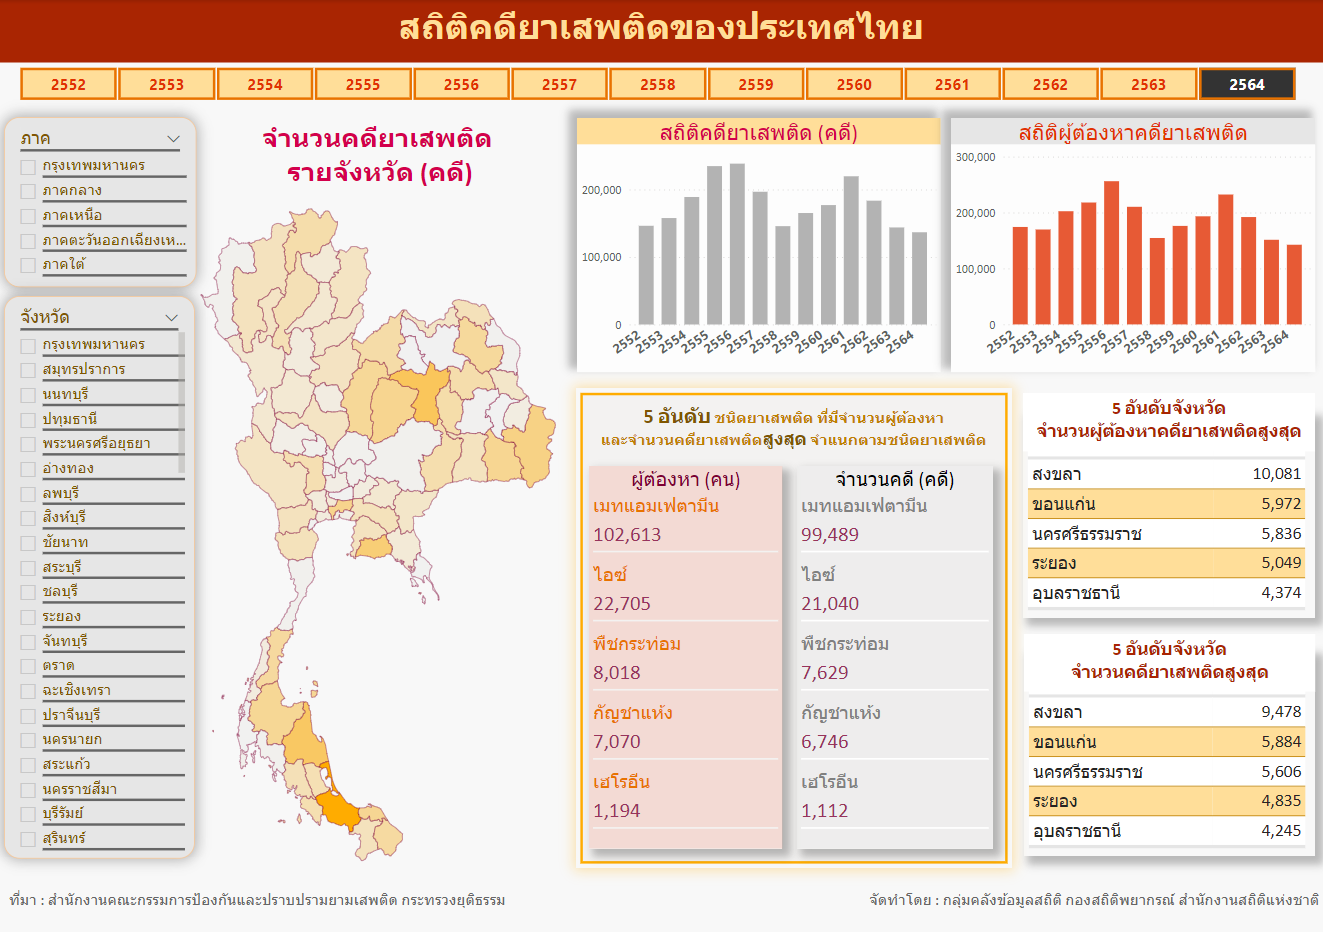 สถิติคดียาเสพติดของประเทศไทย